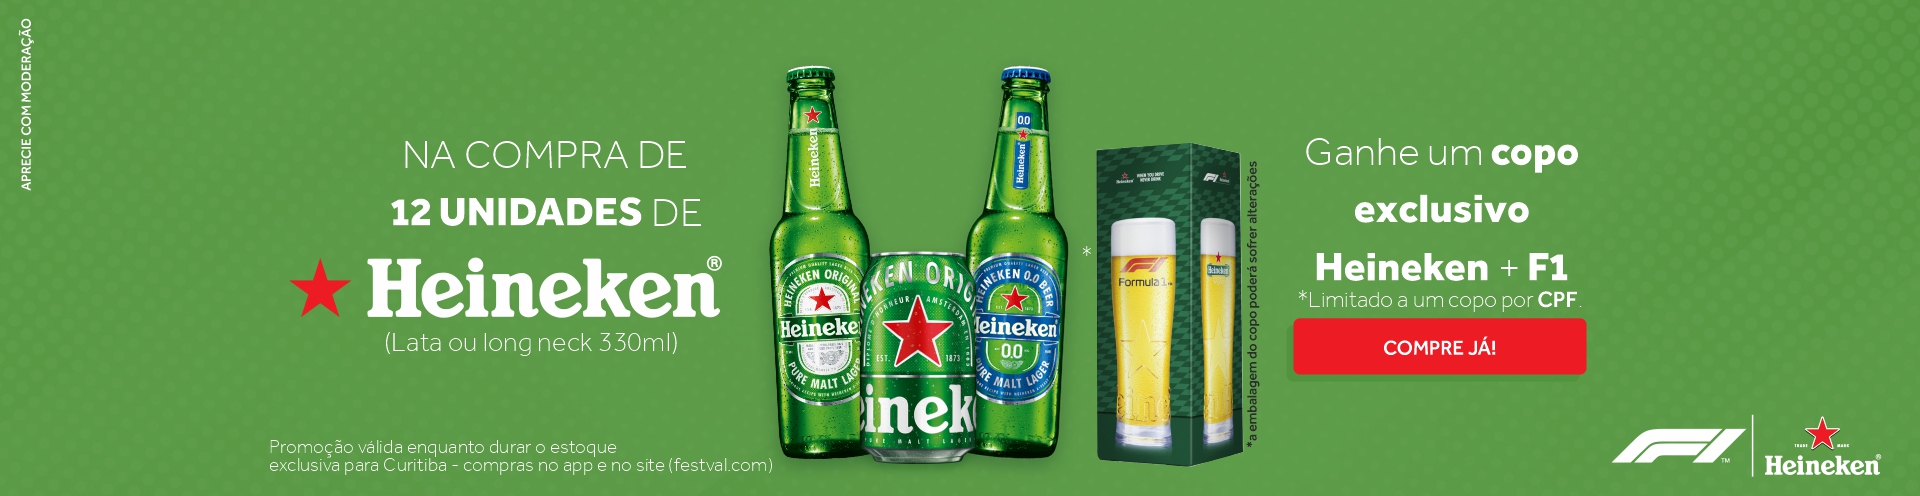 Na compra de 12 Heineken ganhe um copo colecionável - Heineken + F1